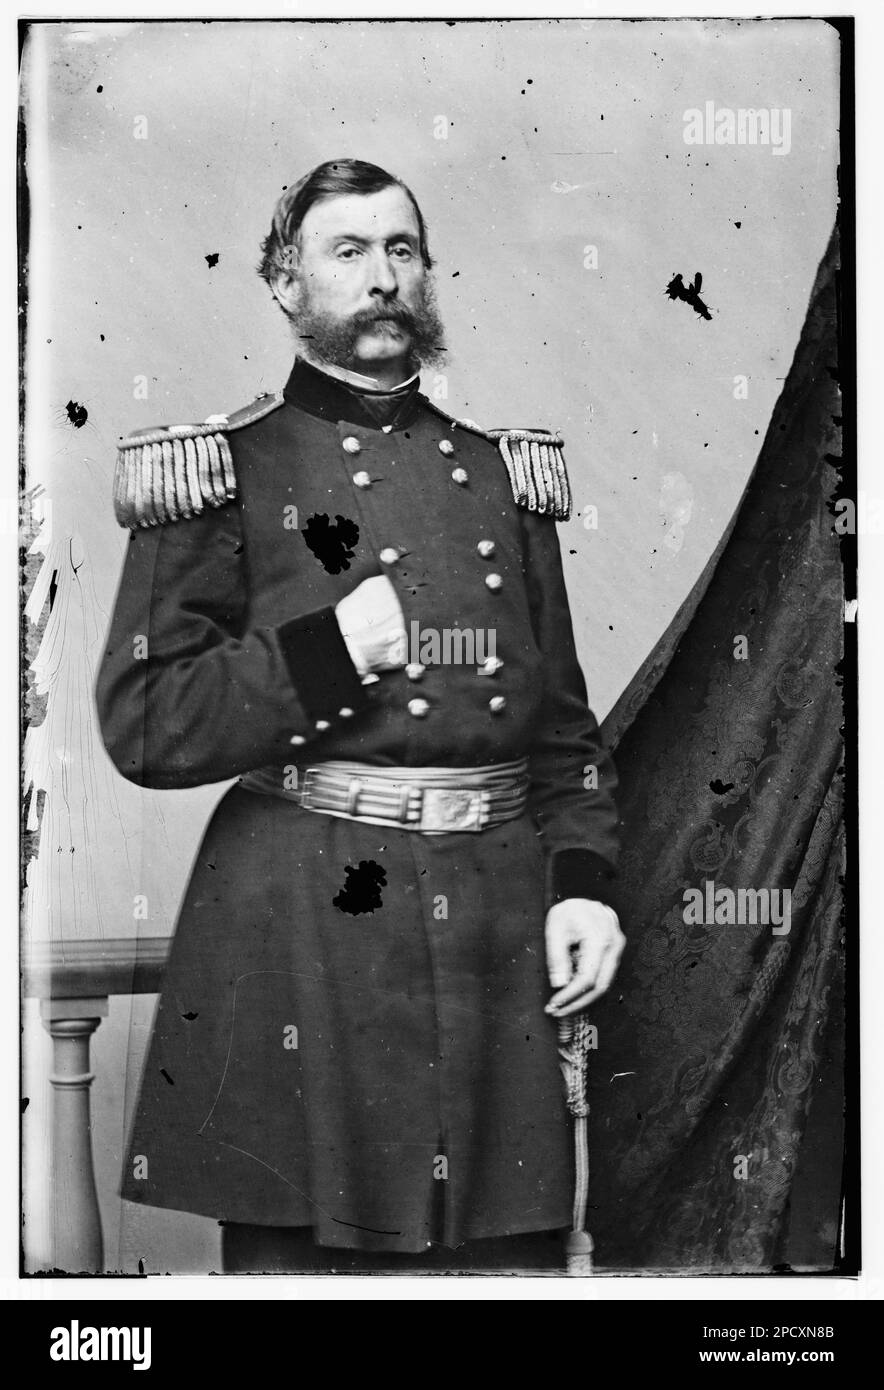 Lawrence P. Graham. Fotografie della guerra civile, 1861-1865 , titolo dai libri di didascalia della guerra civile. Stati Uniti, Storia, Guerra civile, 1861-1865. Foto Stock